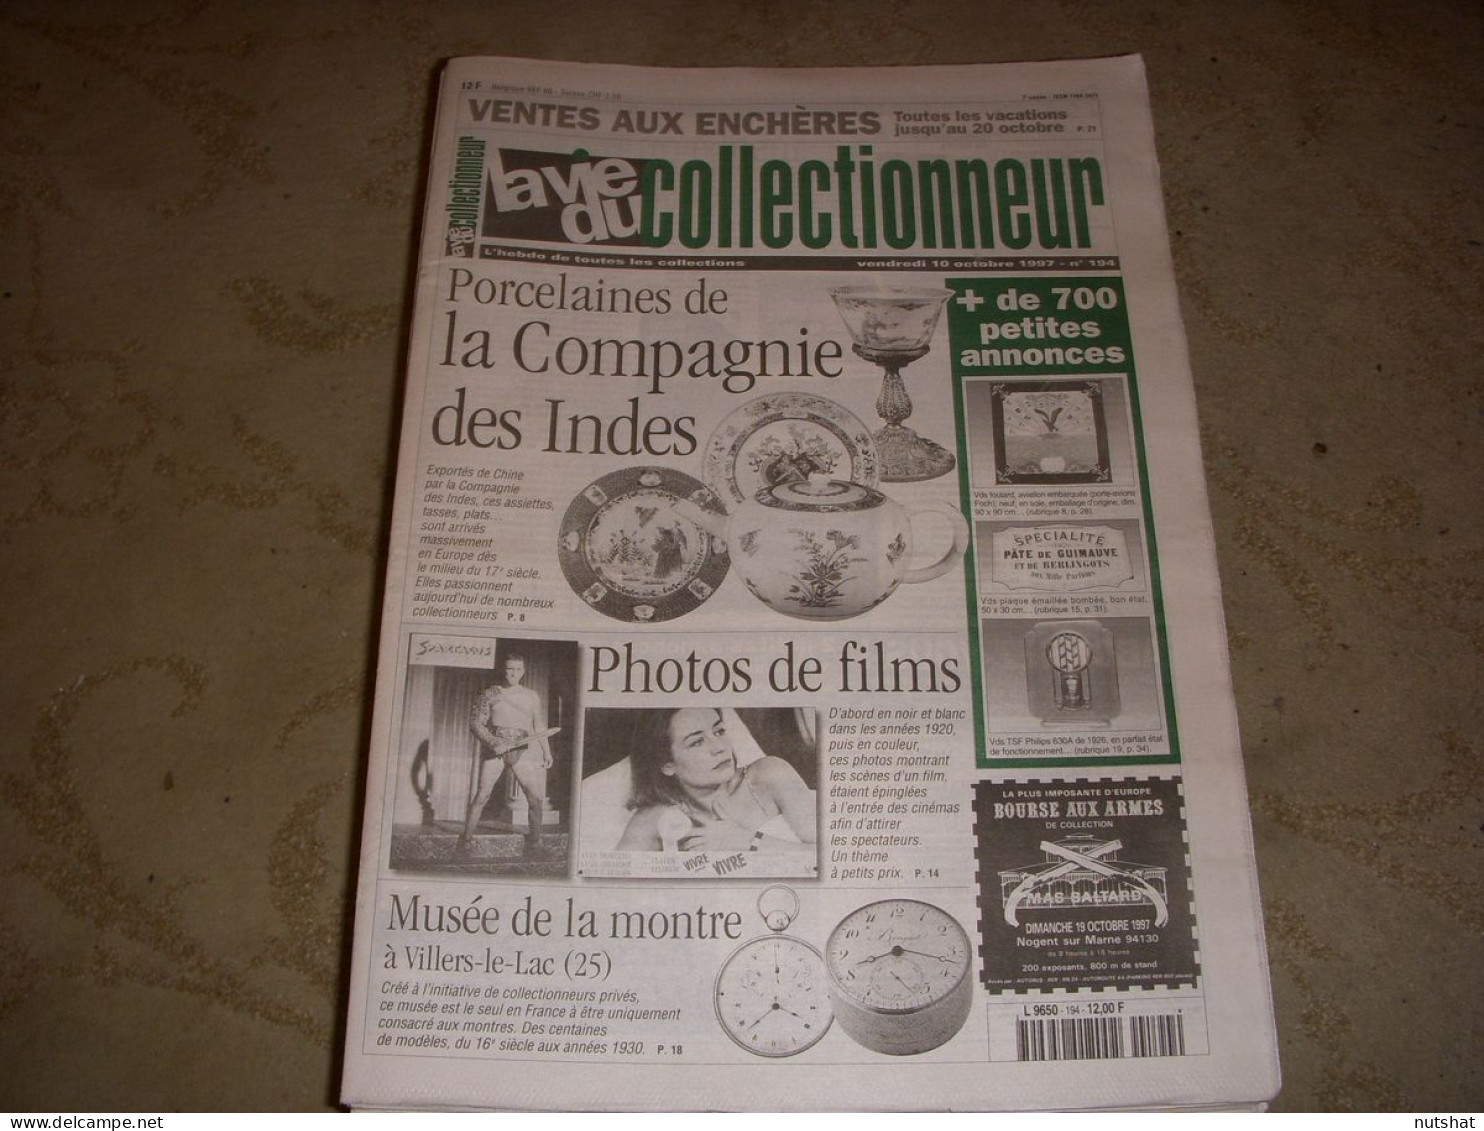 LVC VIE Du COLLECTIONNEUR 194 10.10.1997 PORCELAINE INDES PHOTOS FILMS MONTRE  - Brocantes & Collections